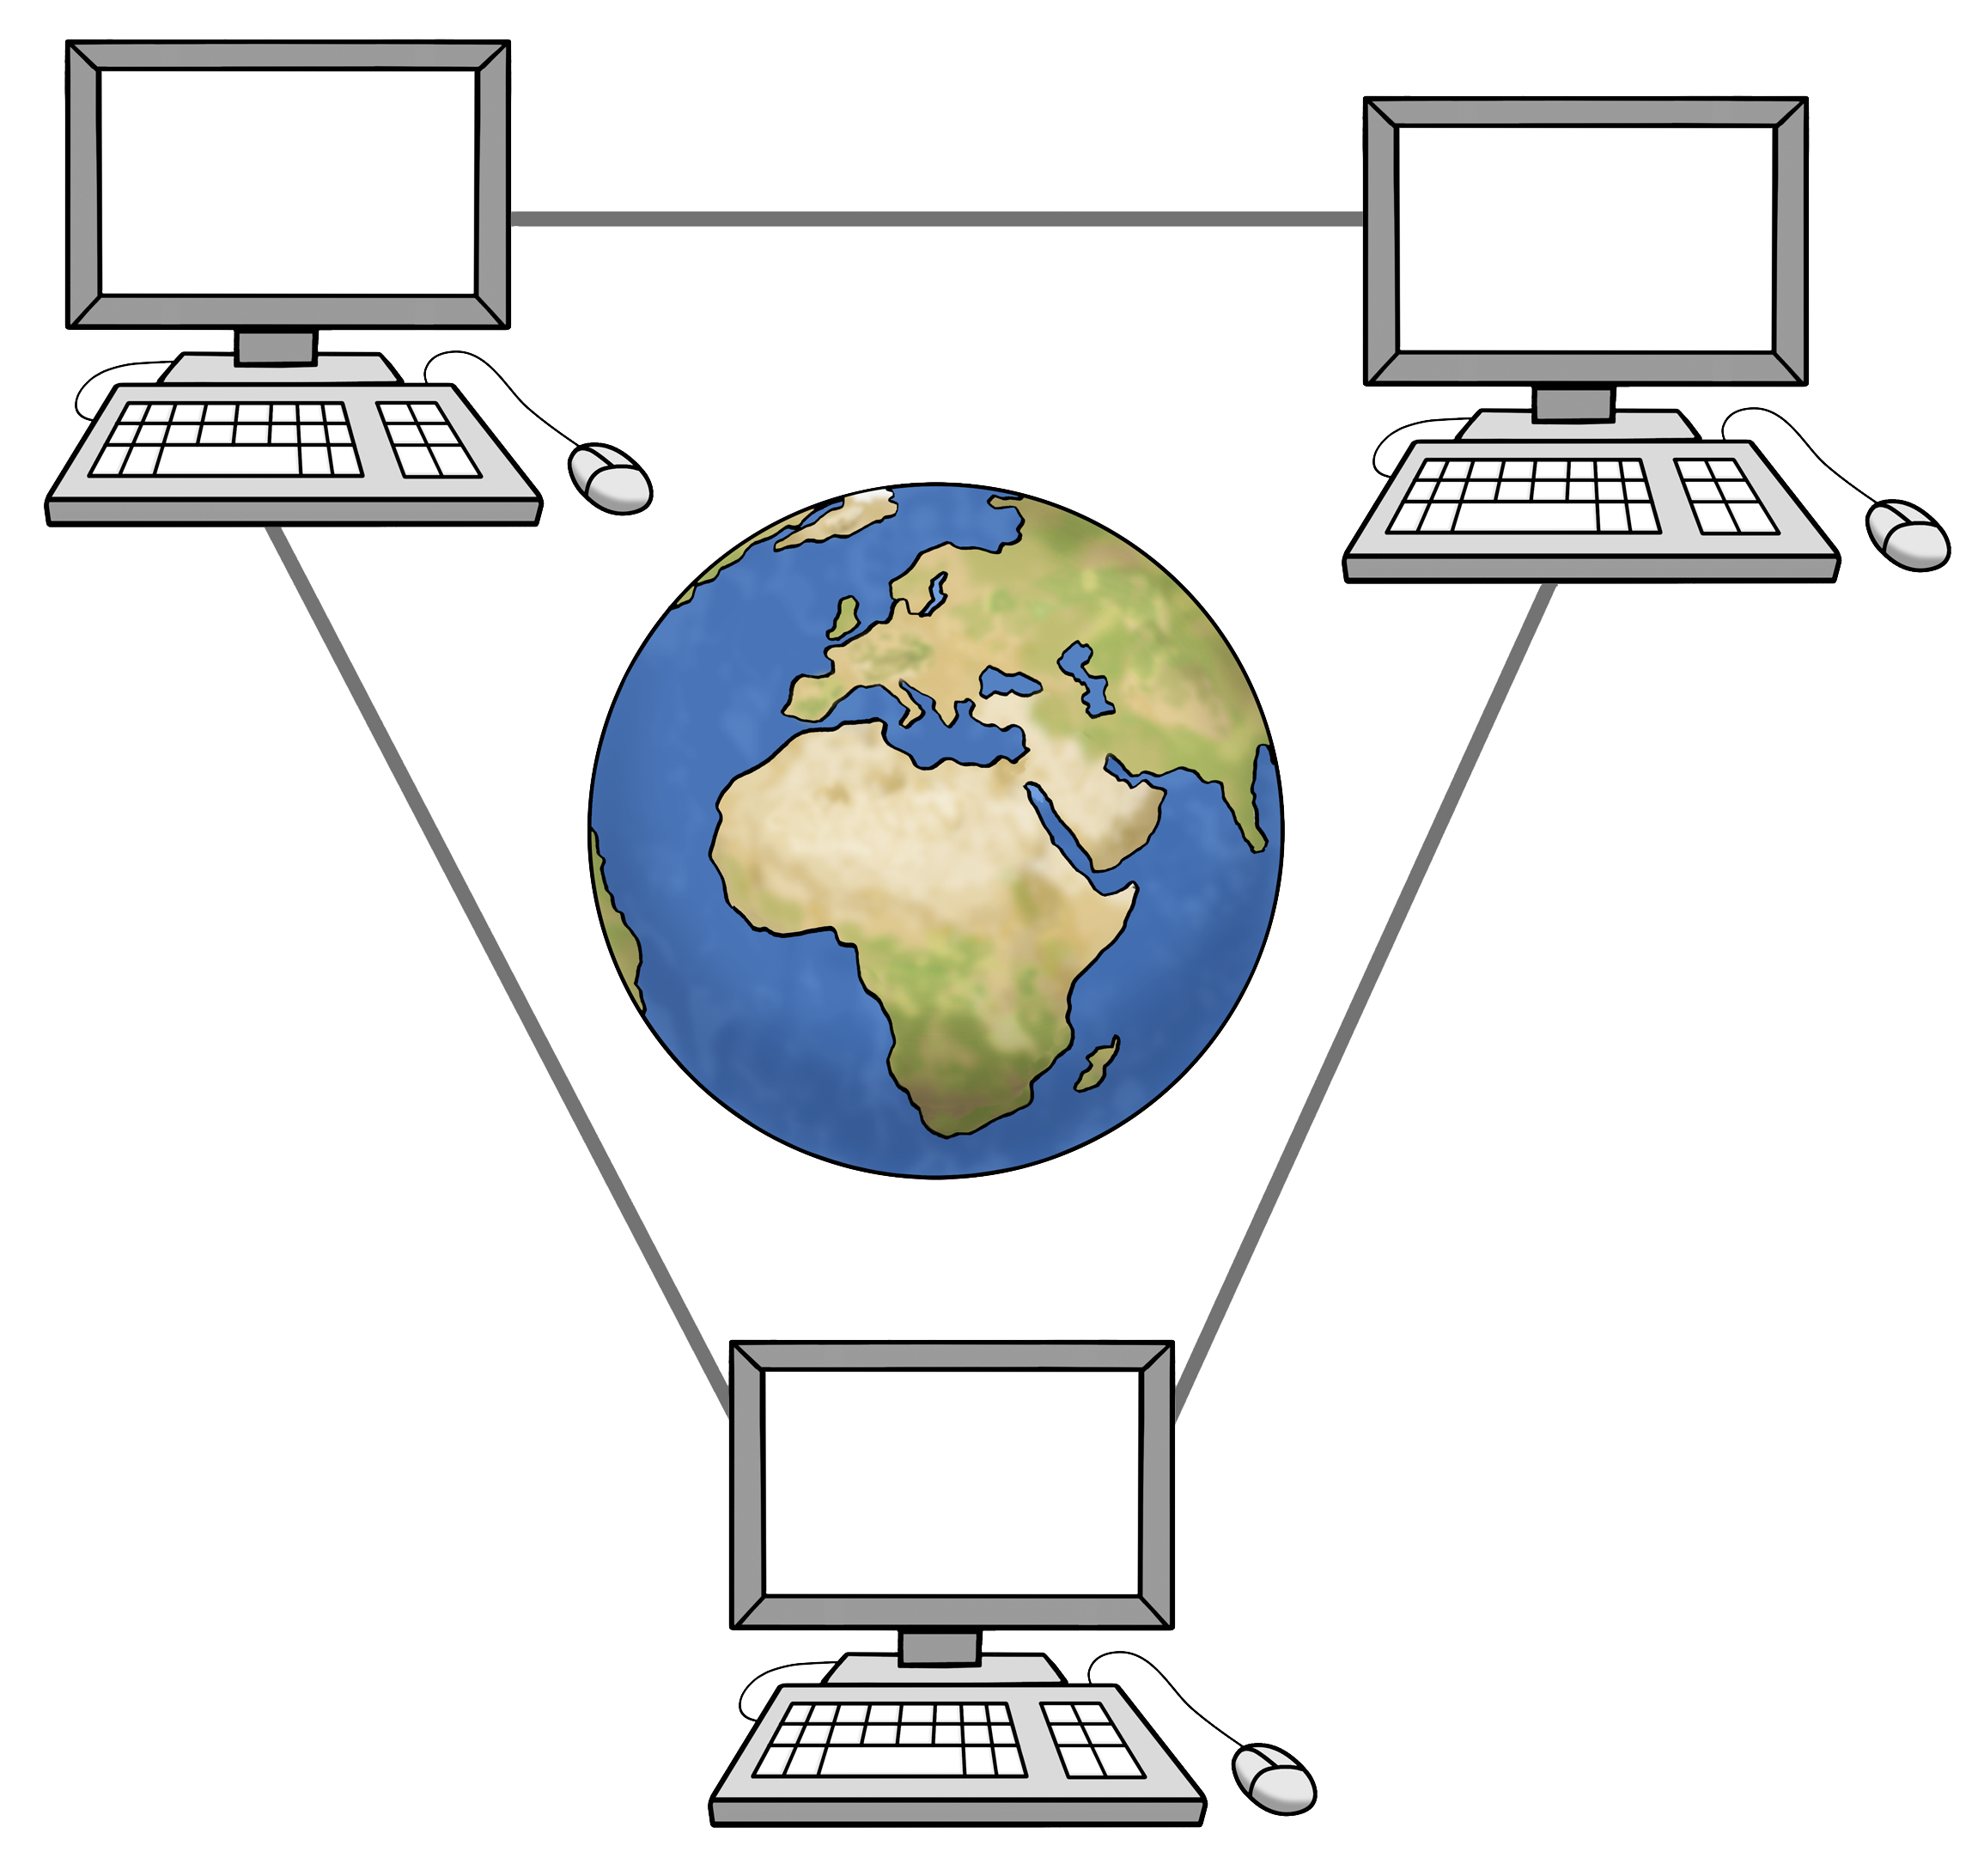 Zeichnung einer Weltkugel umrundet von Computern.